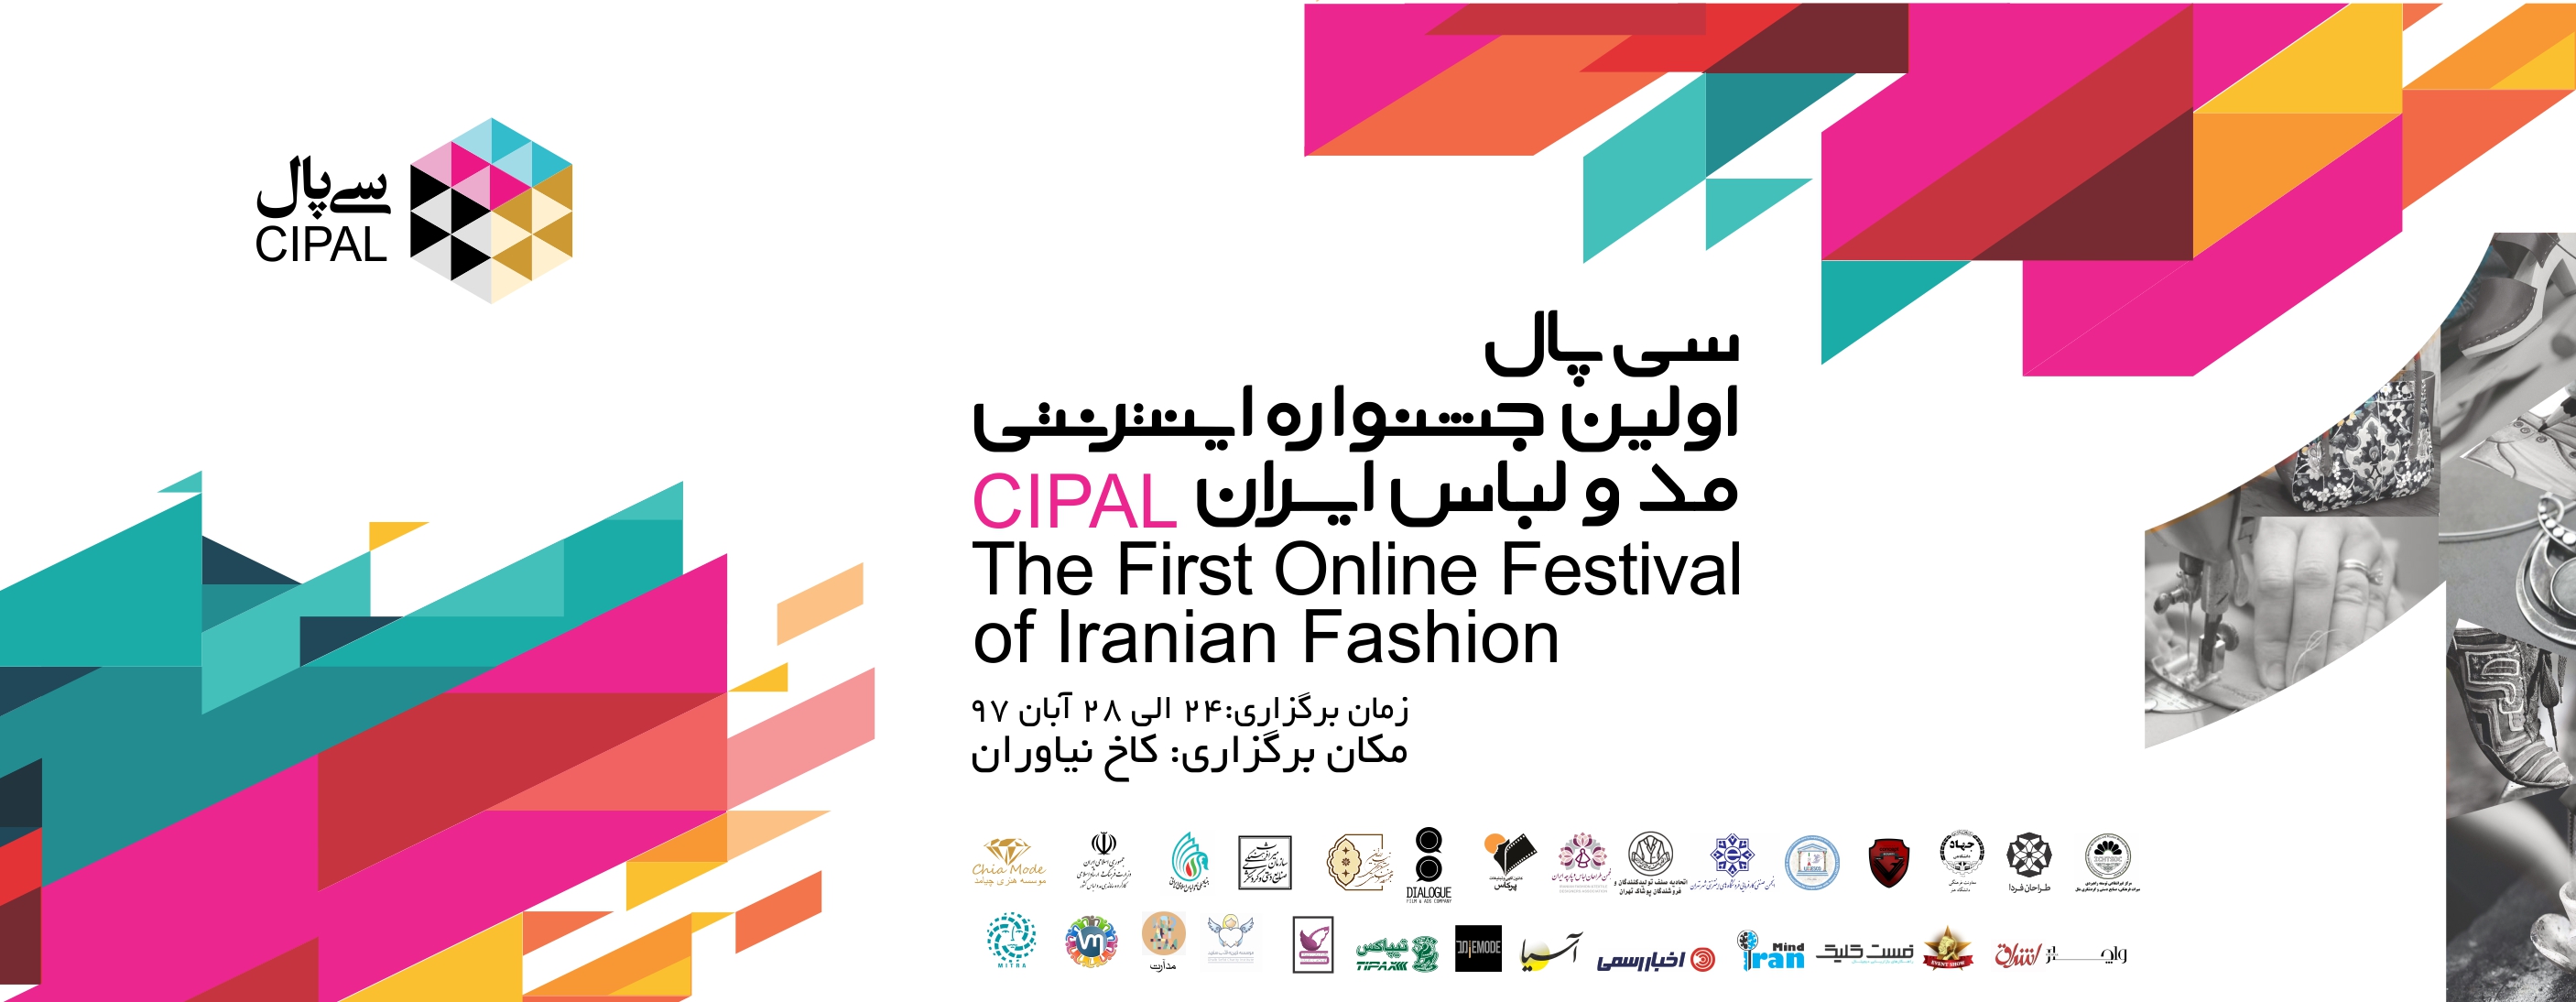 فراخوان اولین جشنواره اینترنتی مد و لباس سی ‌پال